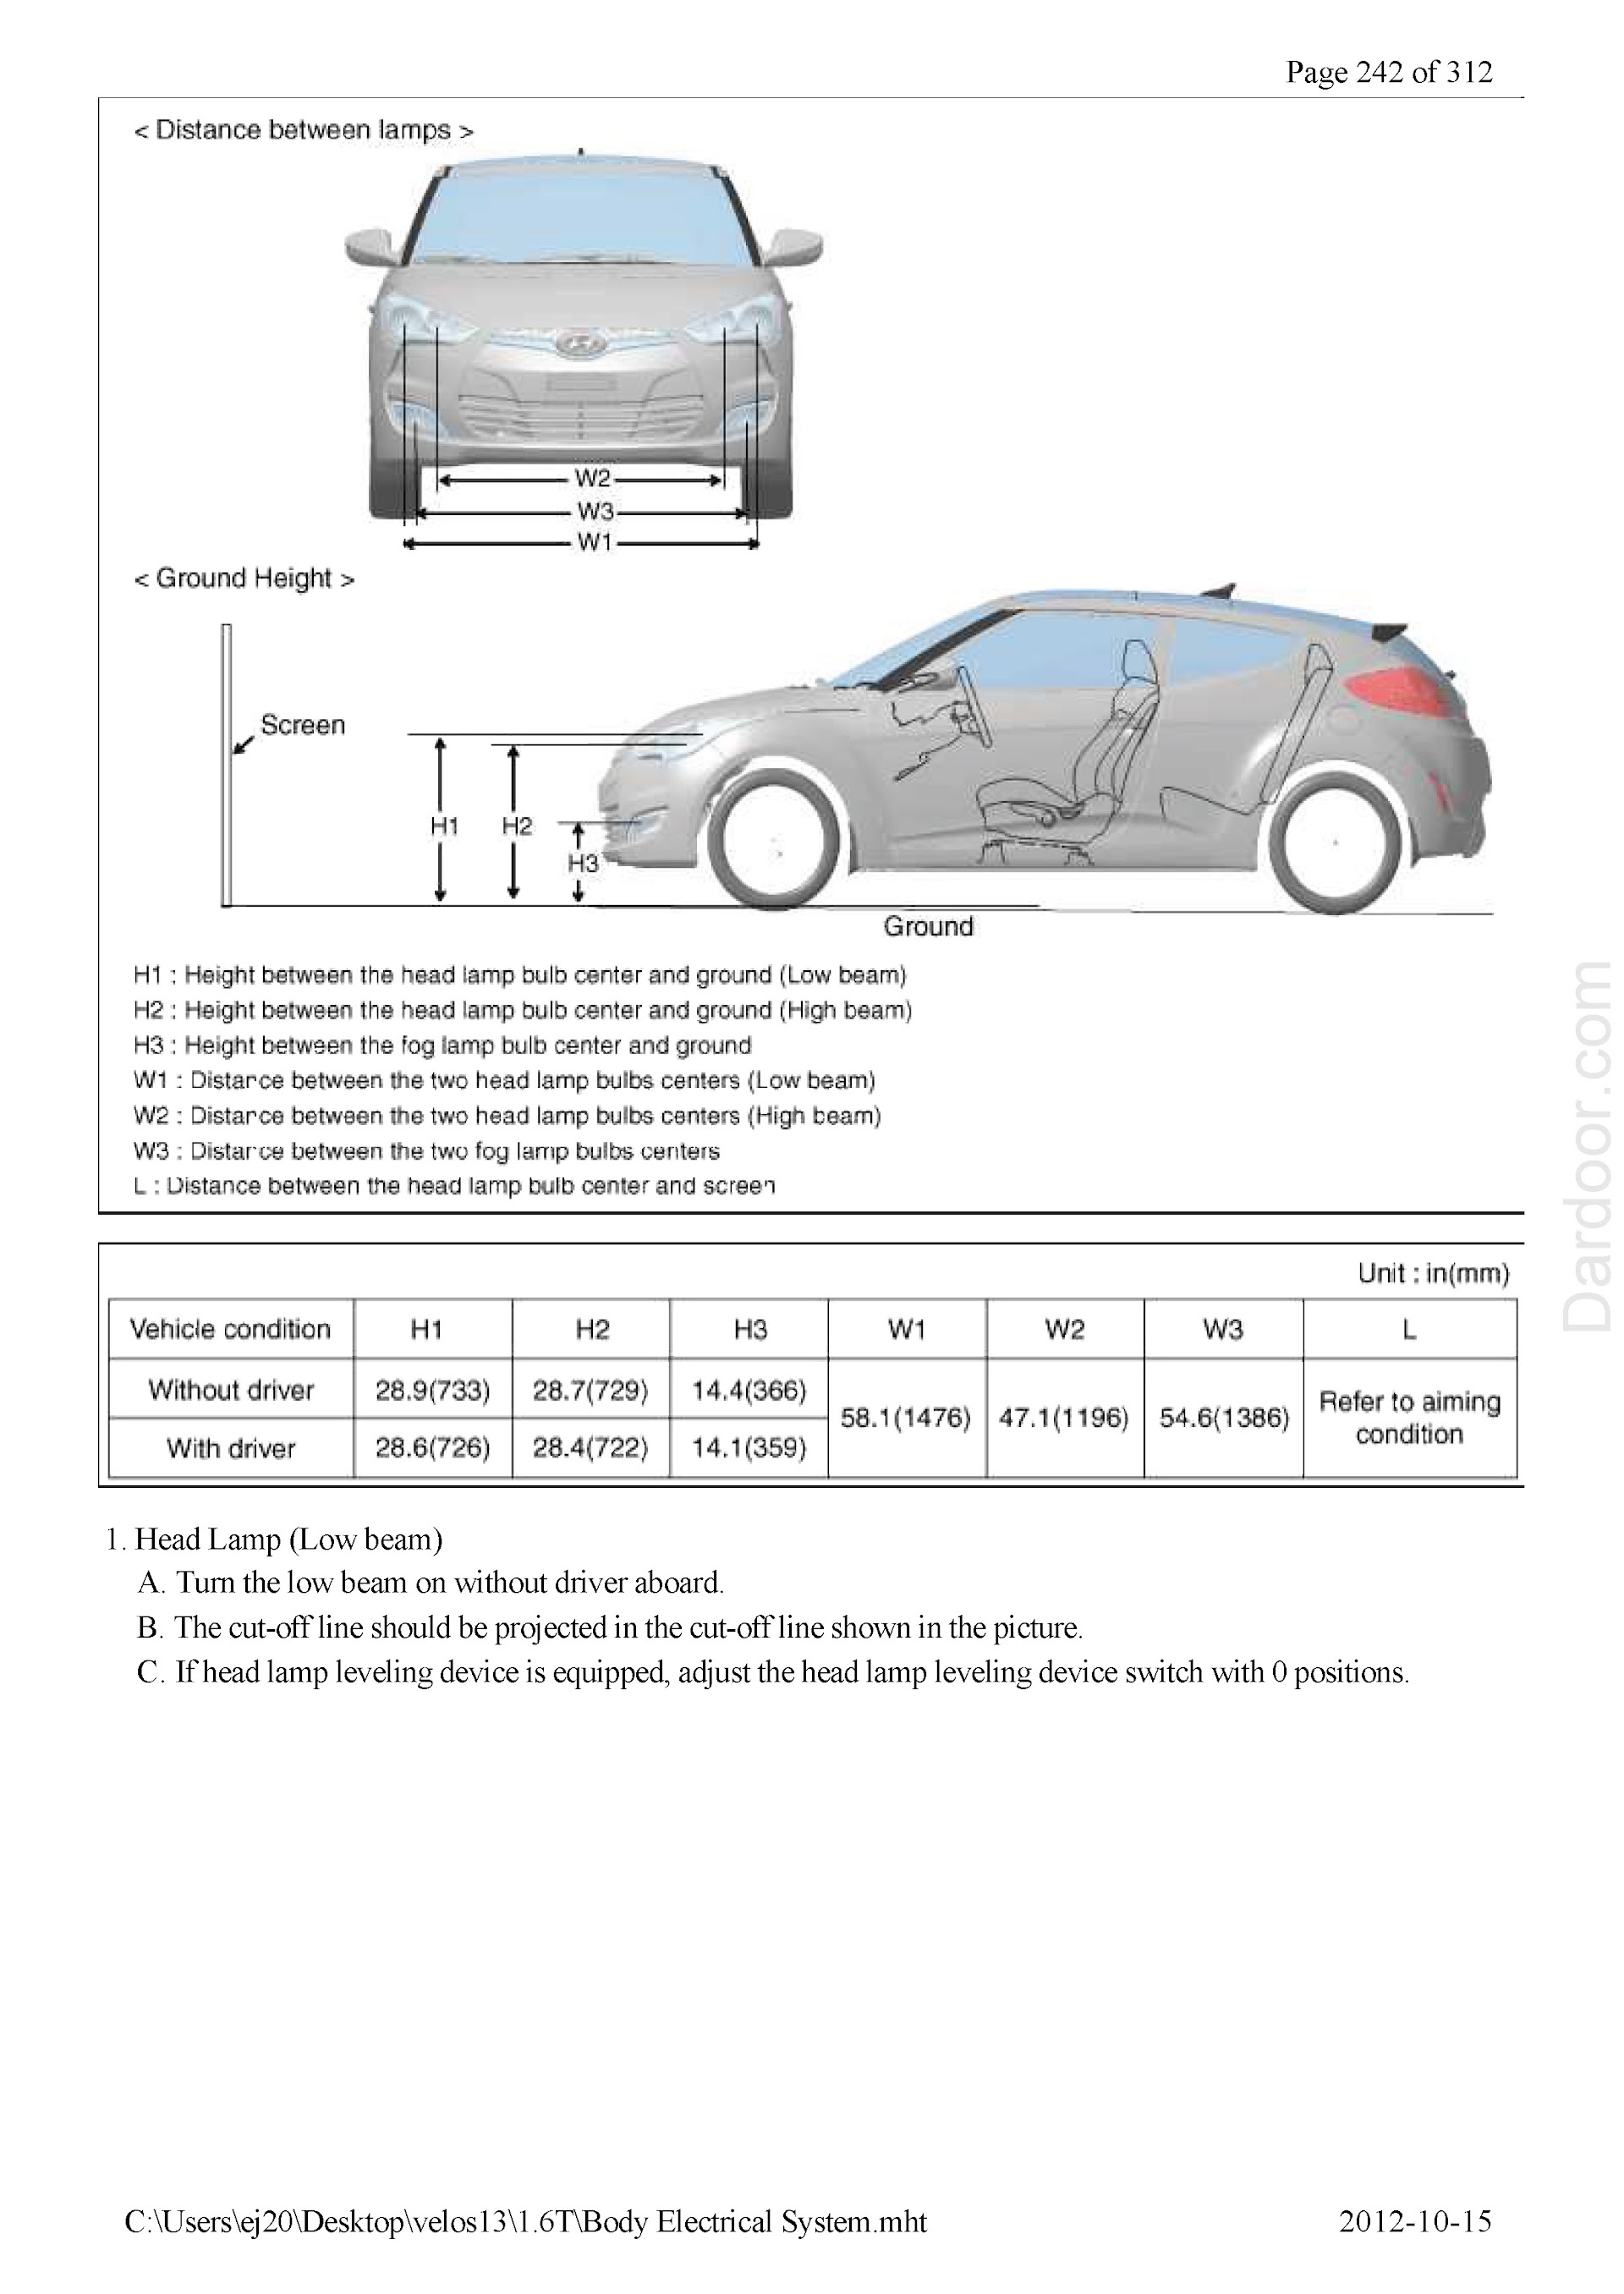 Hyundai Veloster Repair Manual, Head Lamp Adjustment